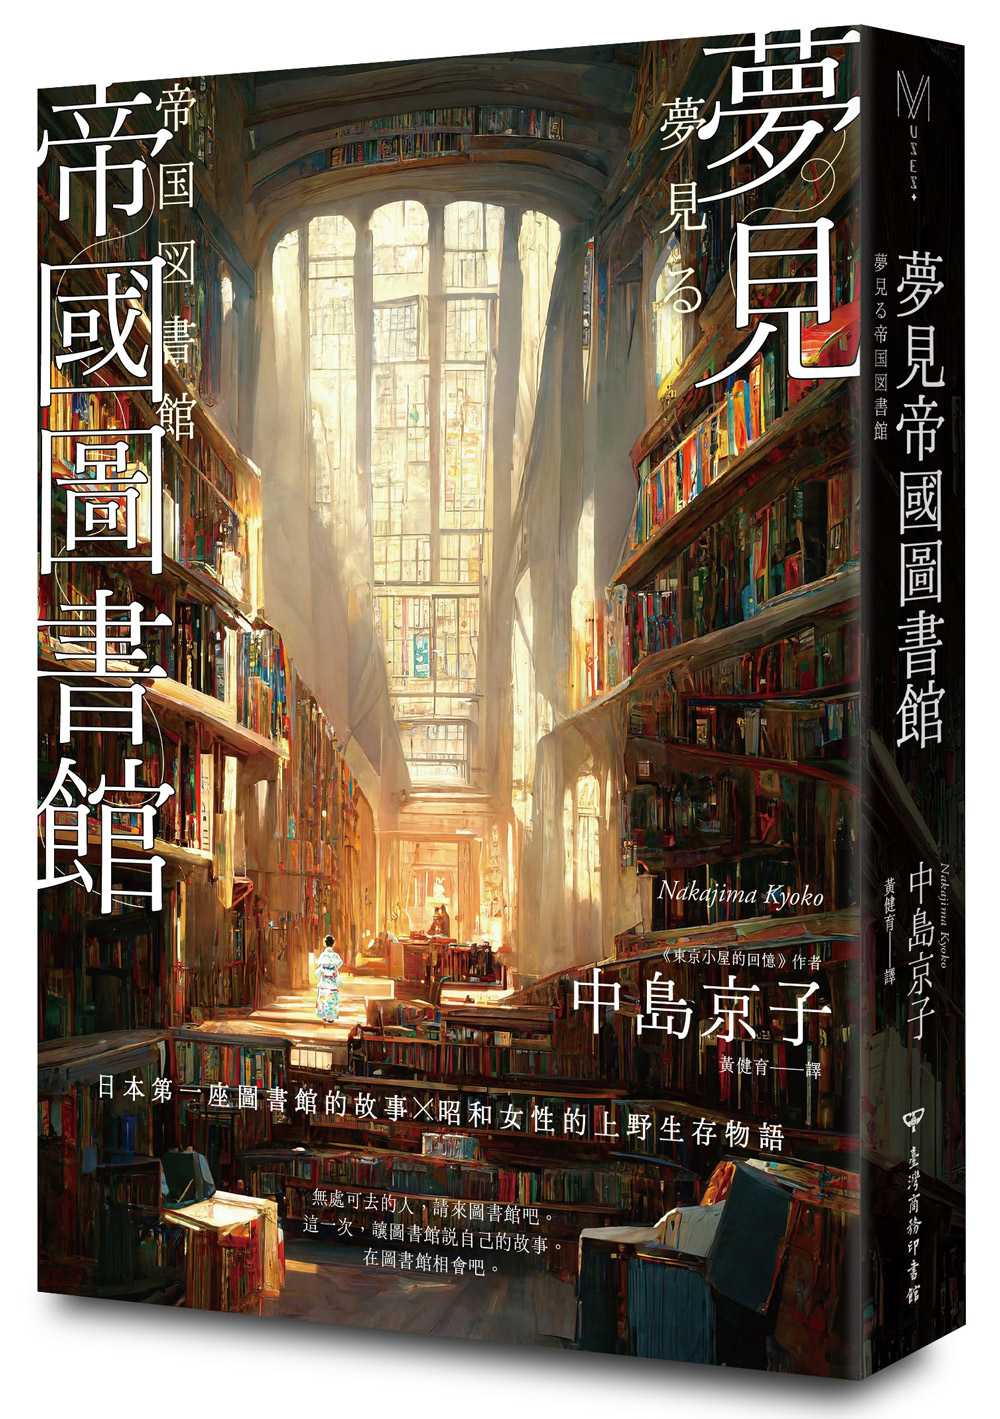 夢見帝國圖書館: 日本第一座圖書館的故事, 感人經典東京小屋的回憶作者女性書寫回歸力作